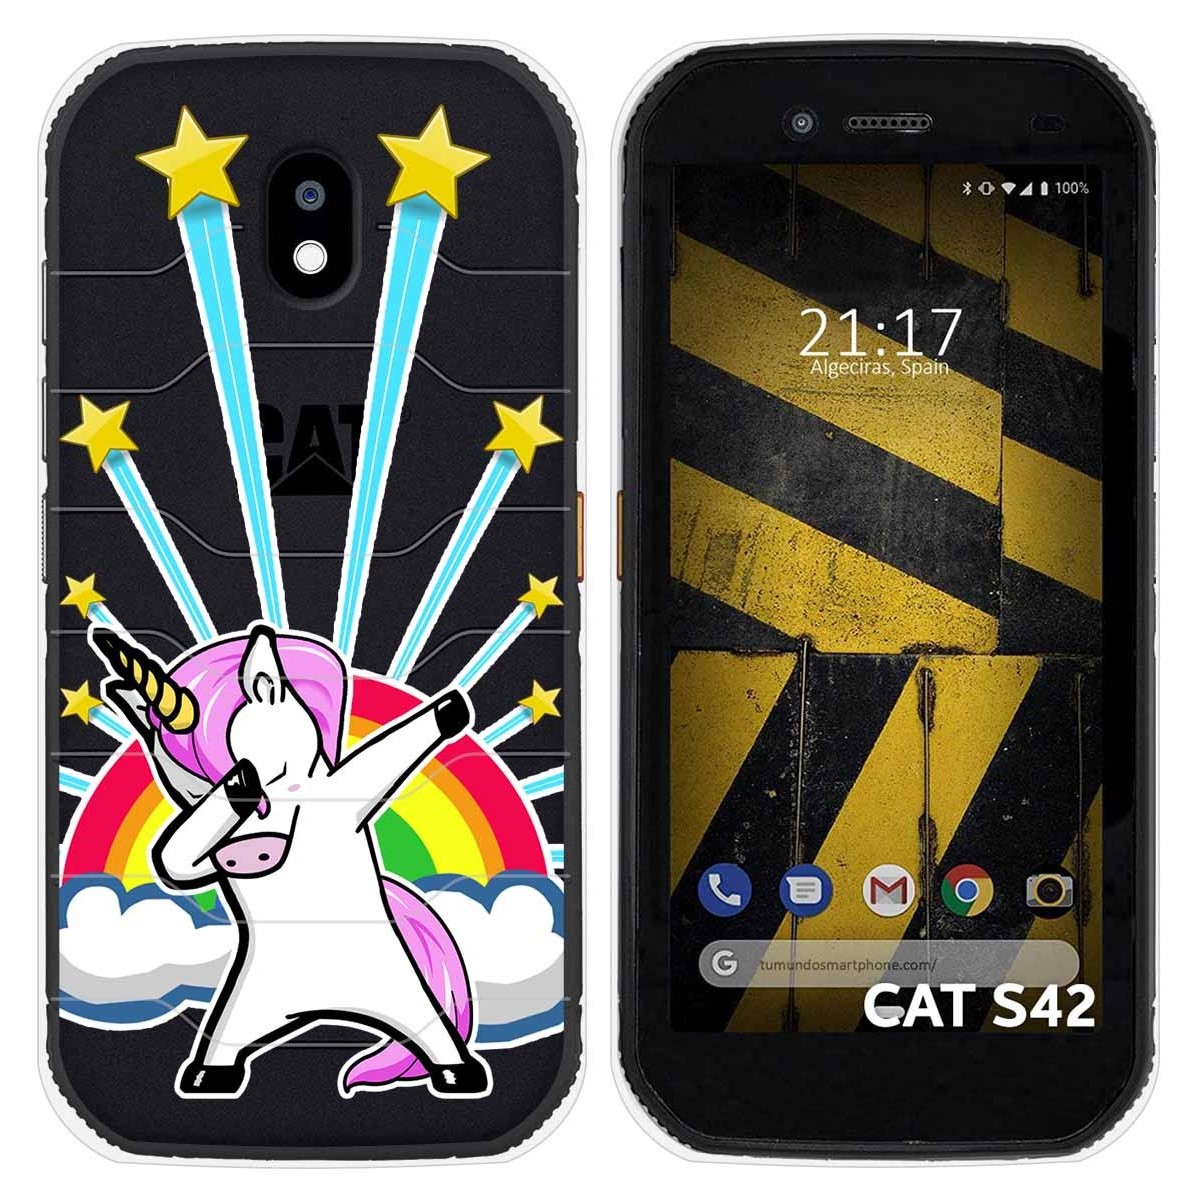 Funda Silicona Transparente para Cat S42 / S42 H+ diseño Unicornio Dibujos